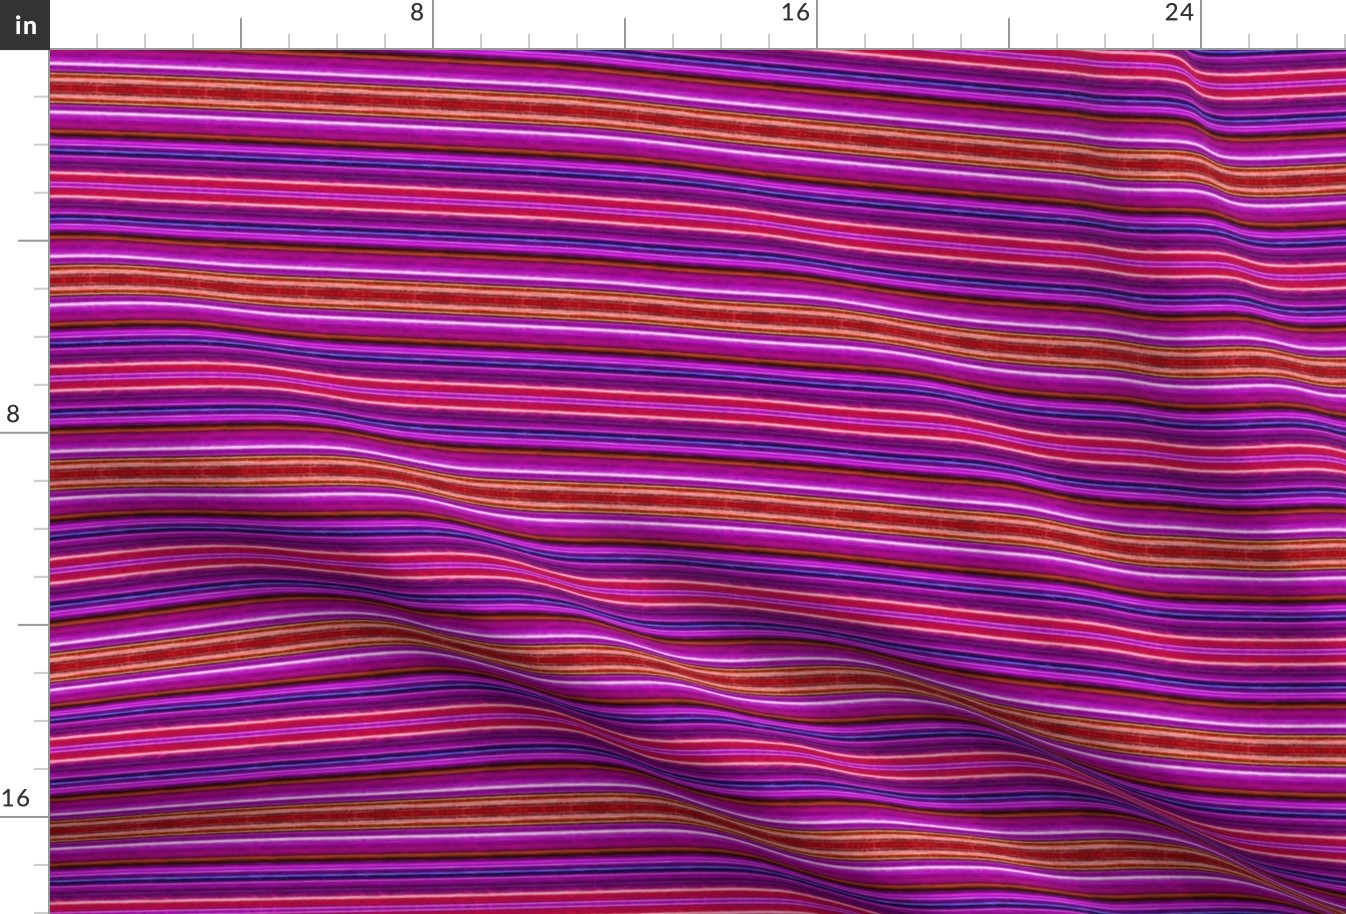 Fractalius Pink Stripes  EW